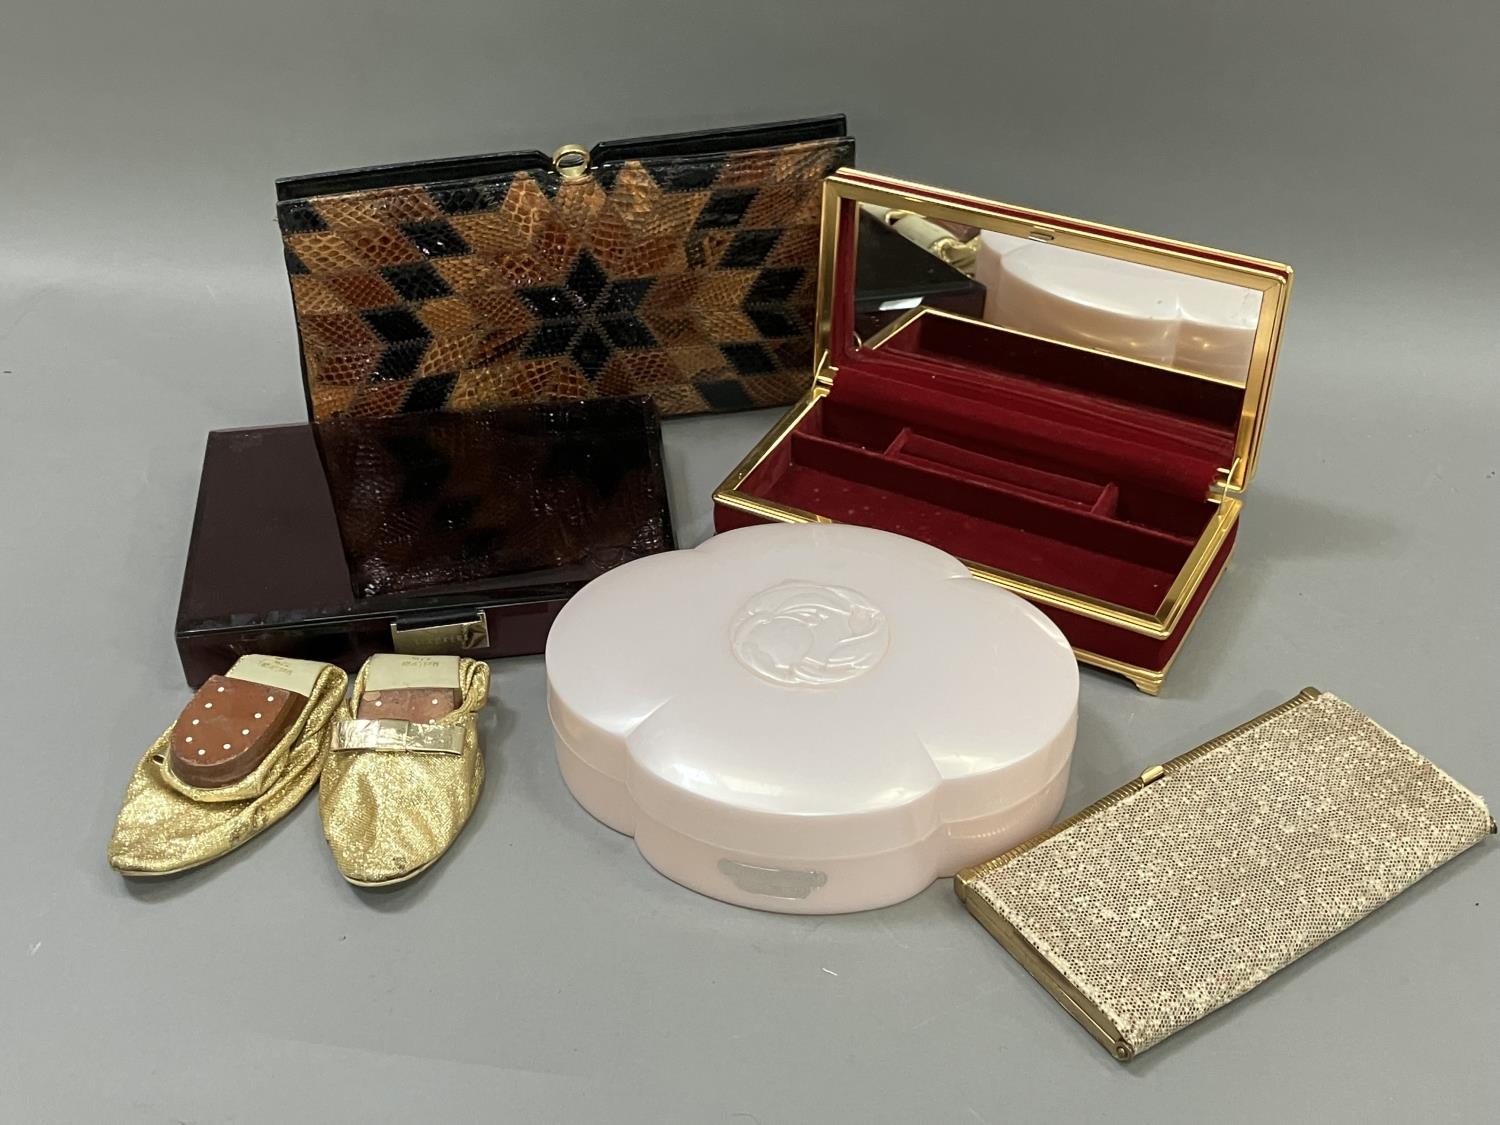 A snakes skin handbag in original packaging, a 1960's evening purse, a pair of gold lurex evening